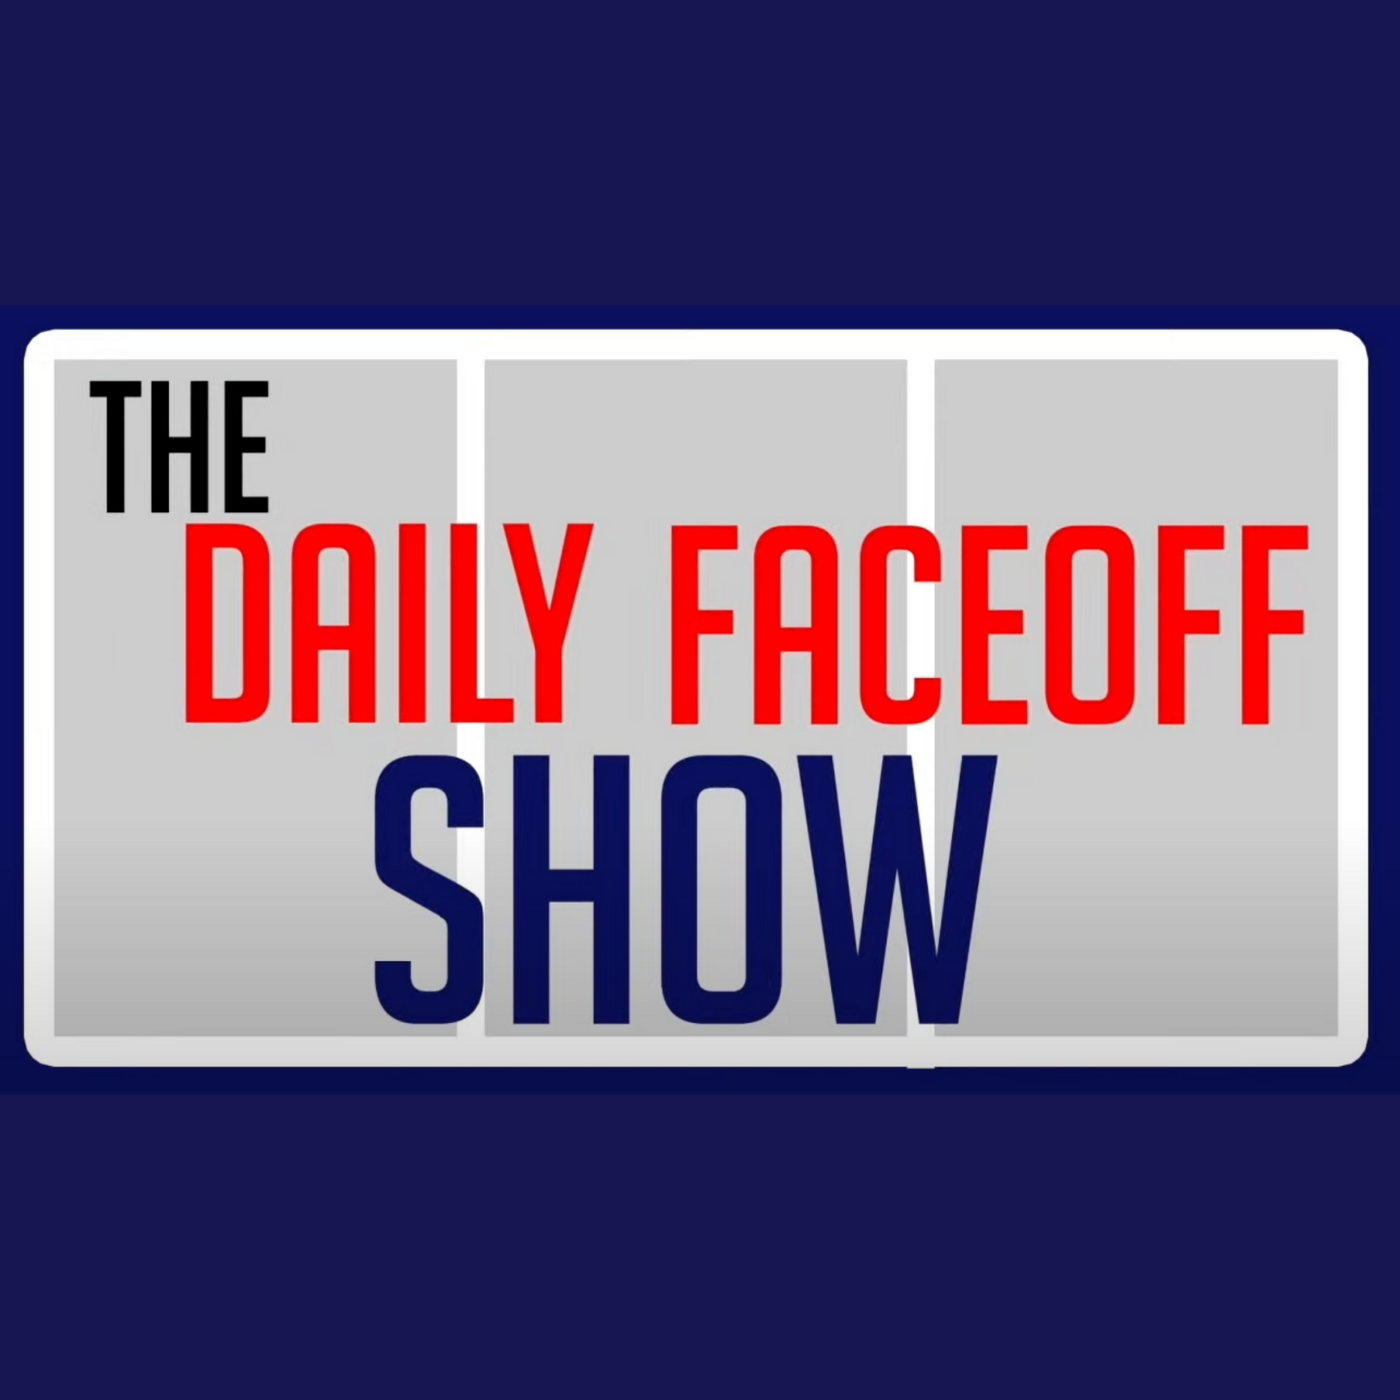 June 10th - The Daily Faceoff Show - Feat. Frank Seravalli, Matt Larkin & Jon Goyens